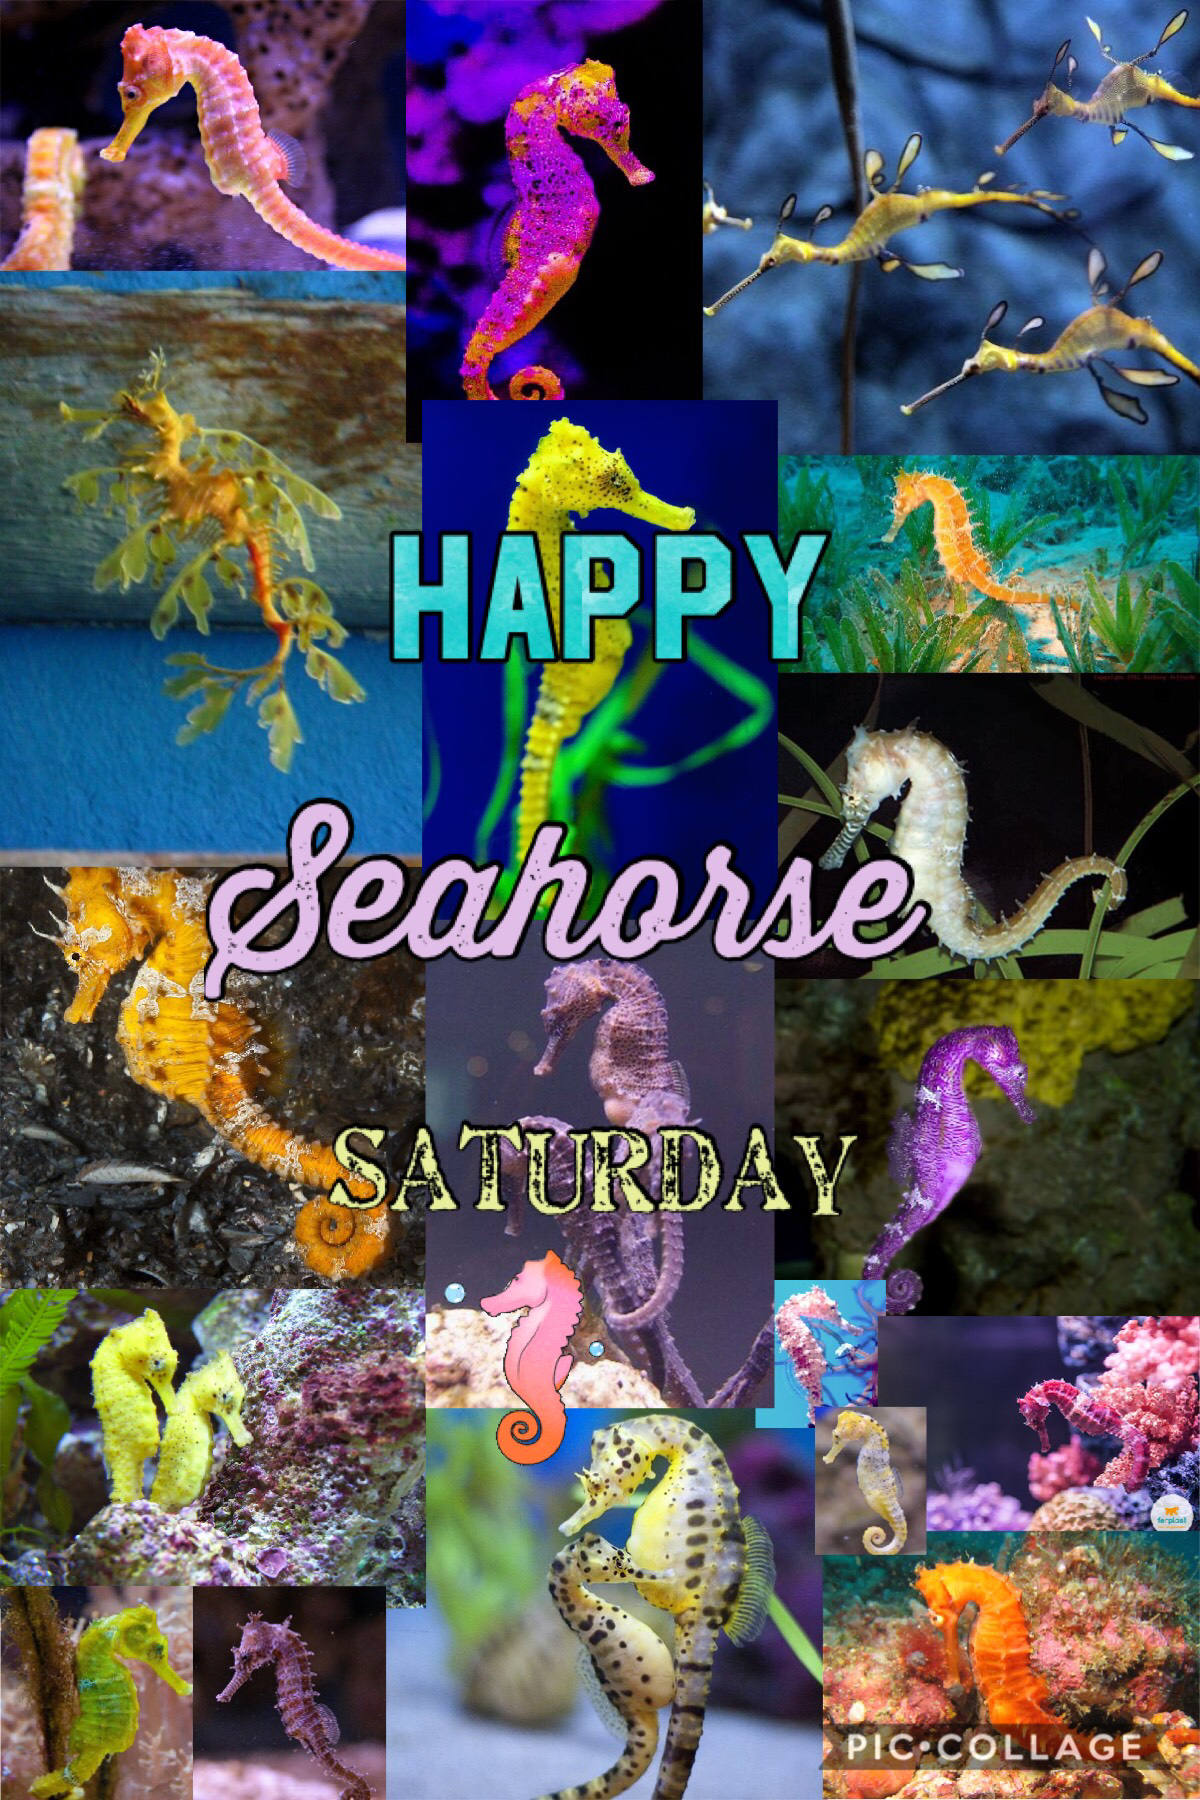 Happy seahorse Saturday